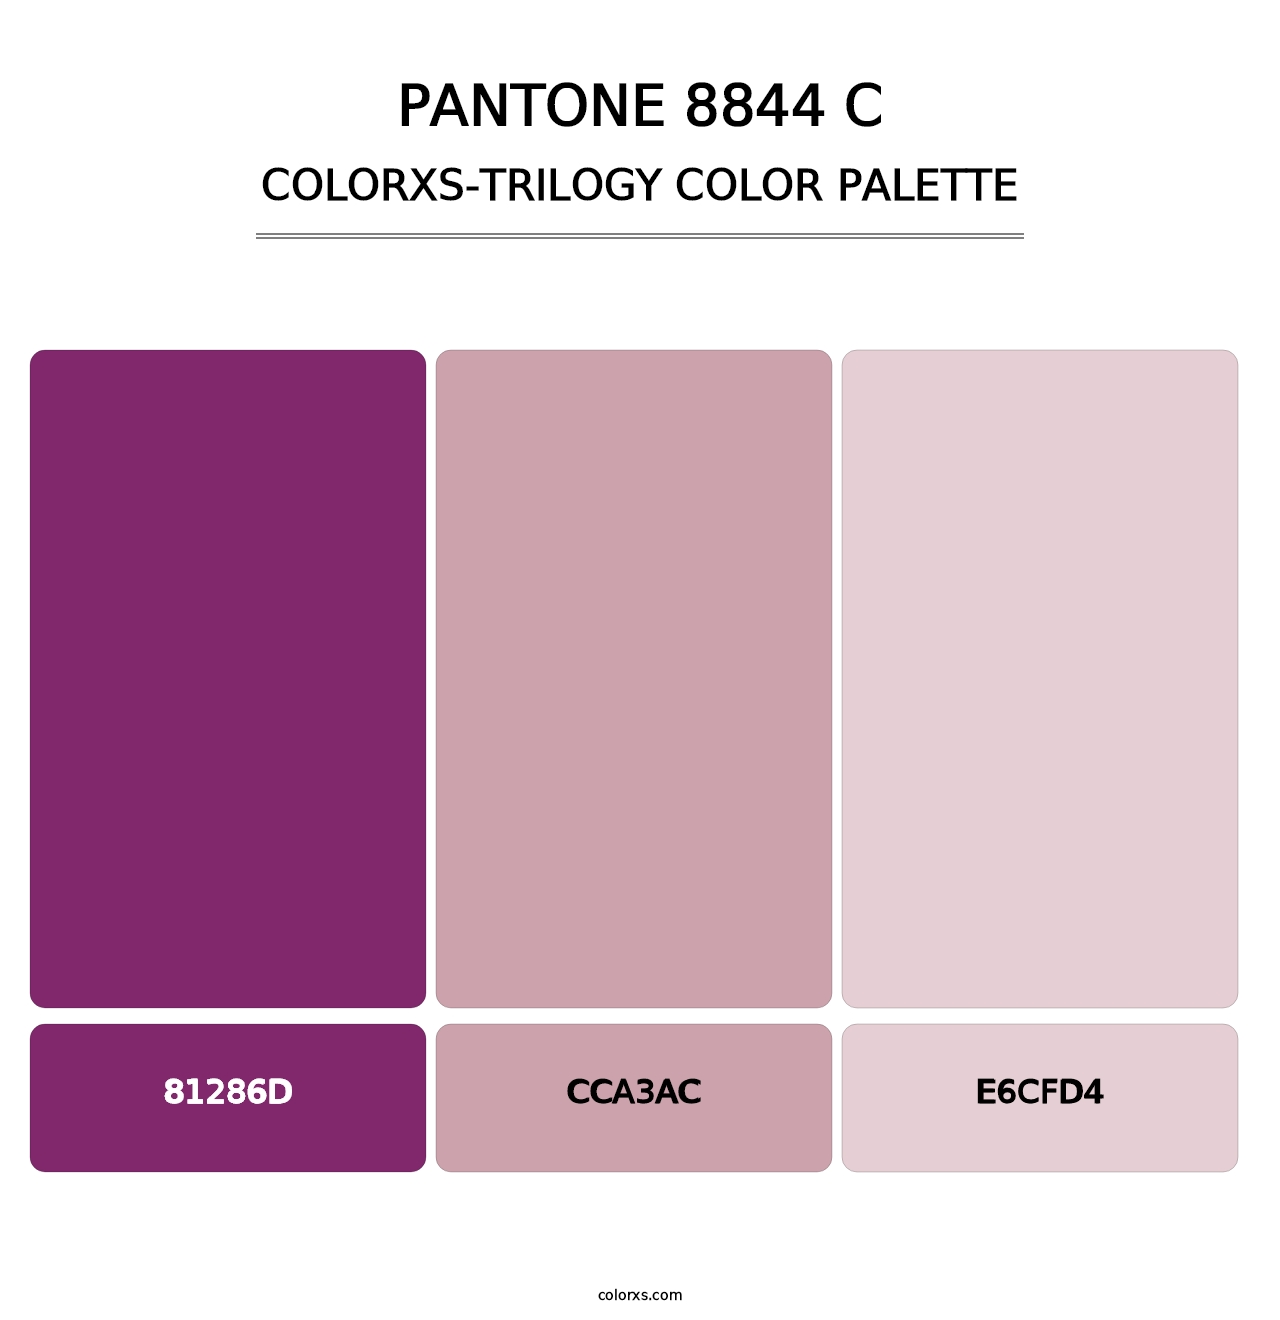 PANTONE 8844 C - Colorxs Trilogy Palette